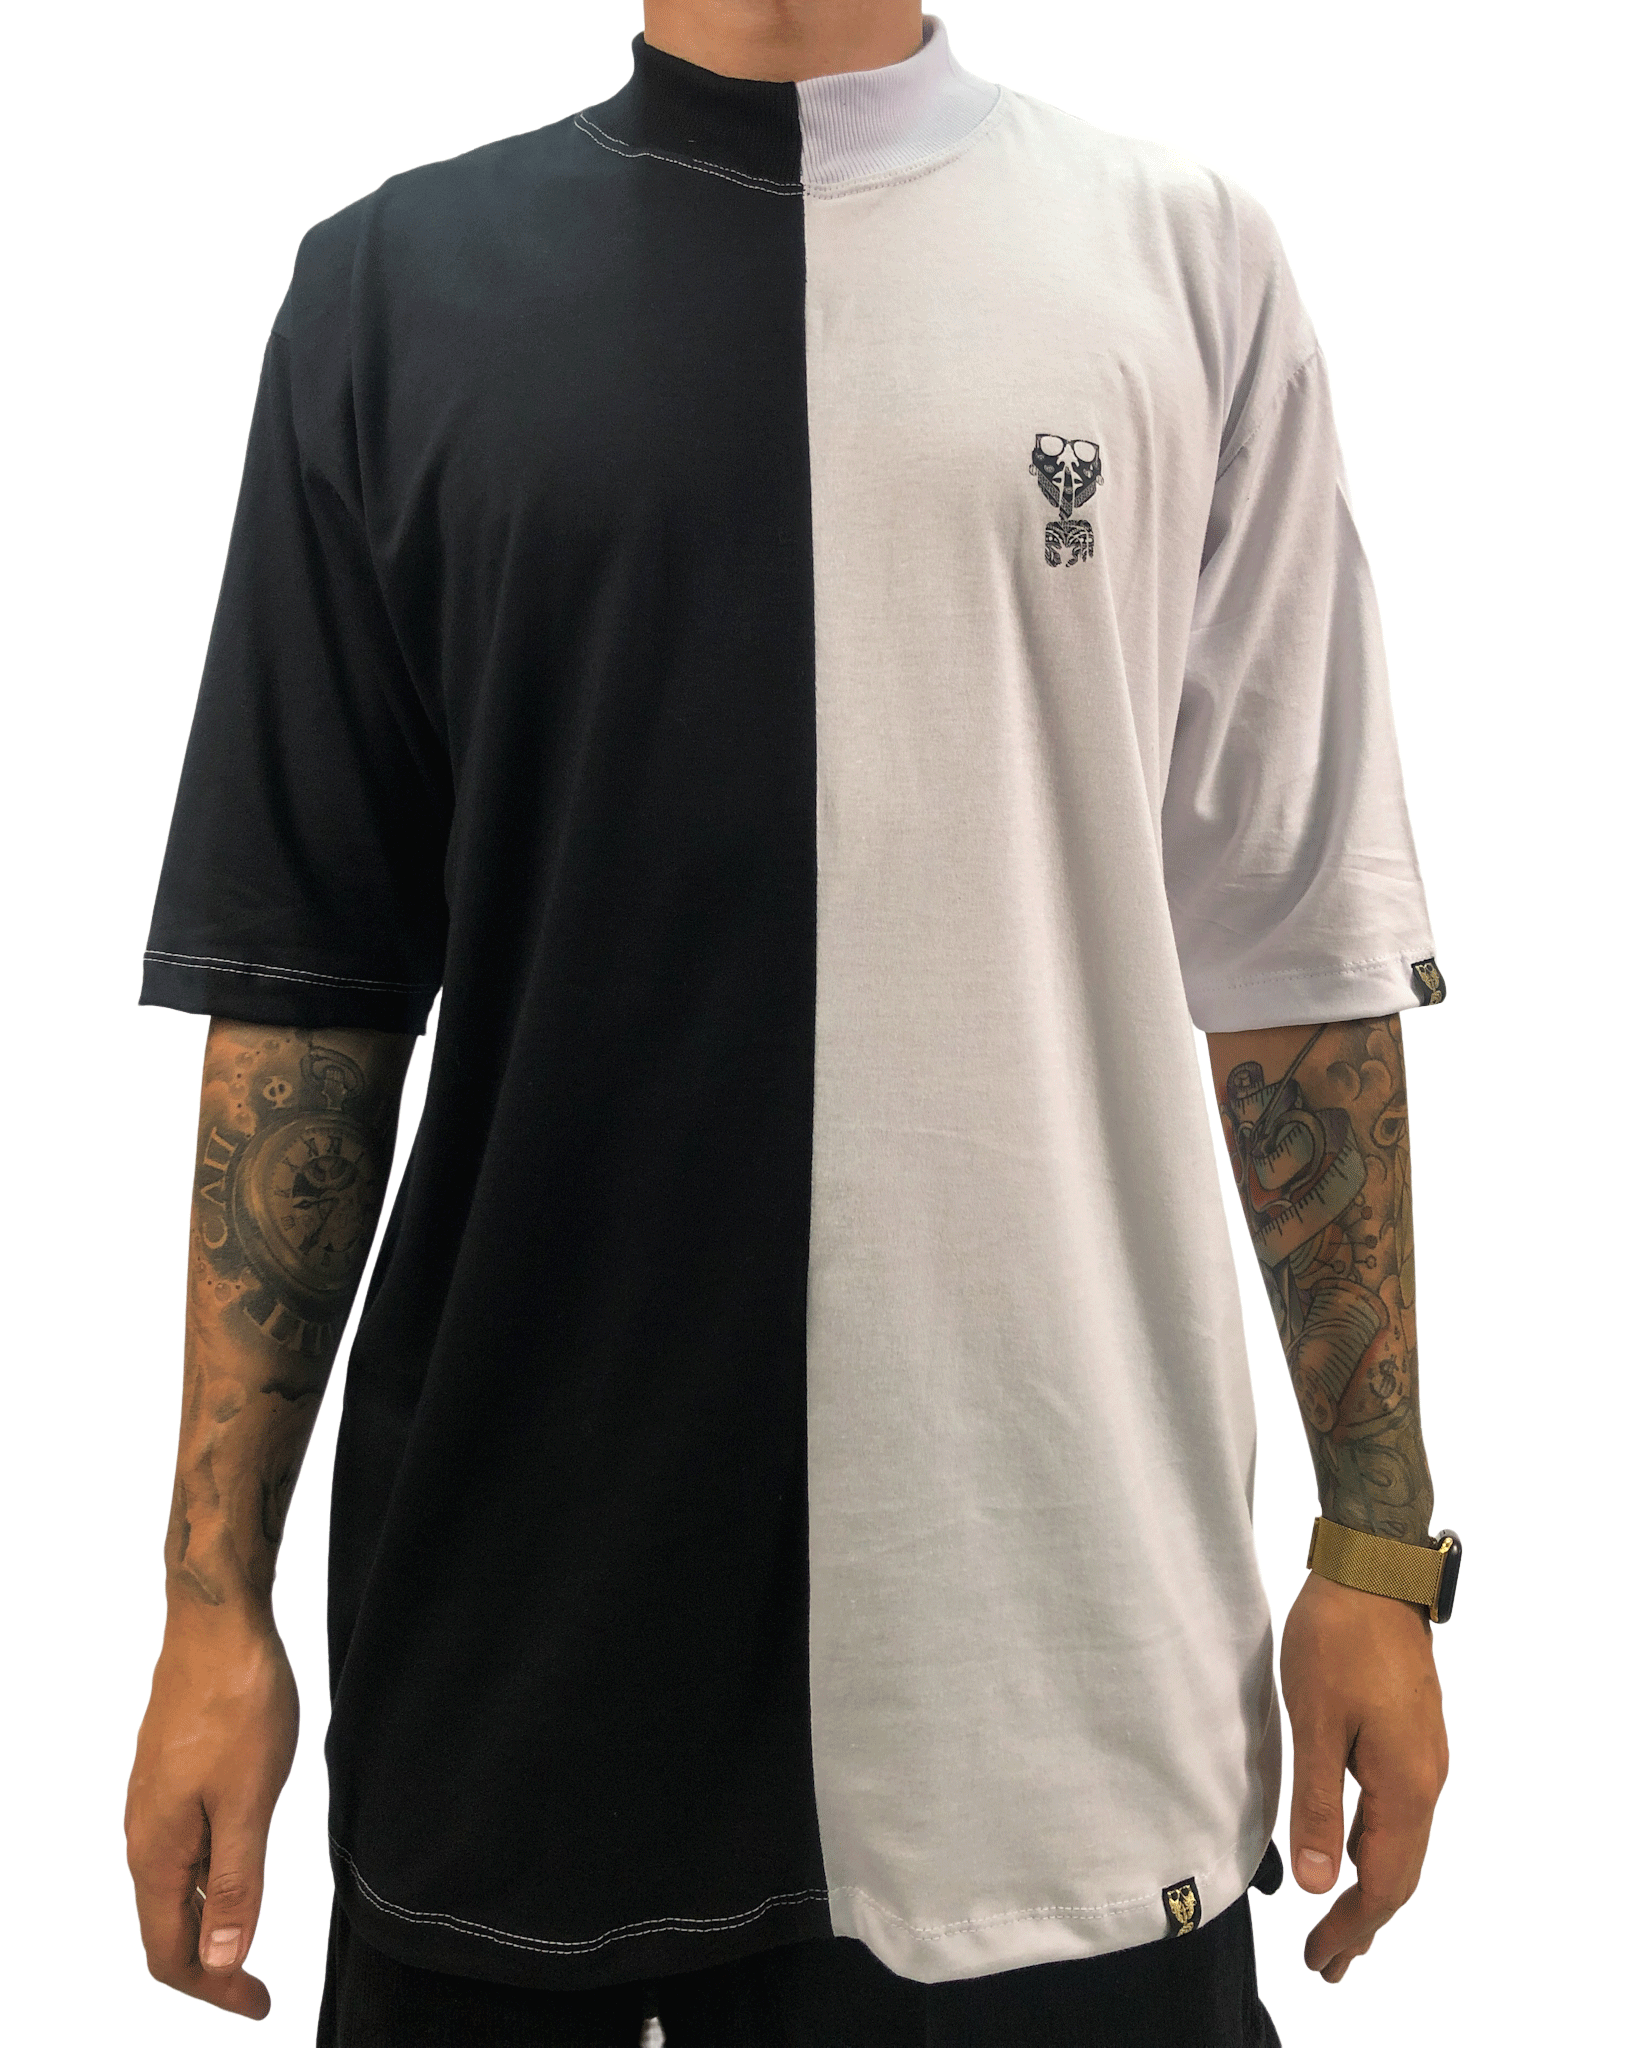 camiseta semi long oversized black white